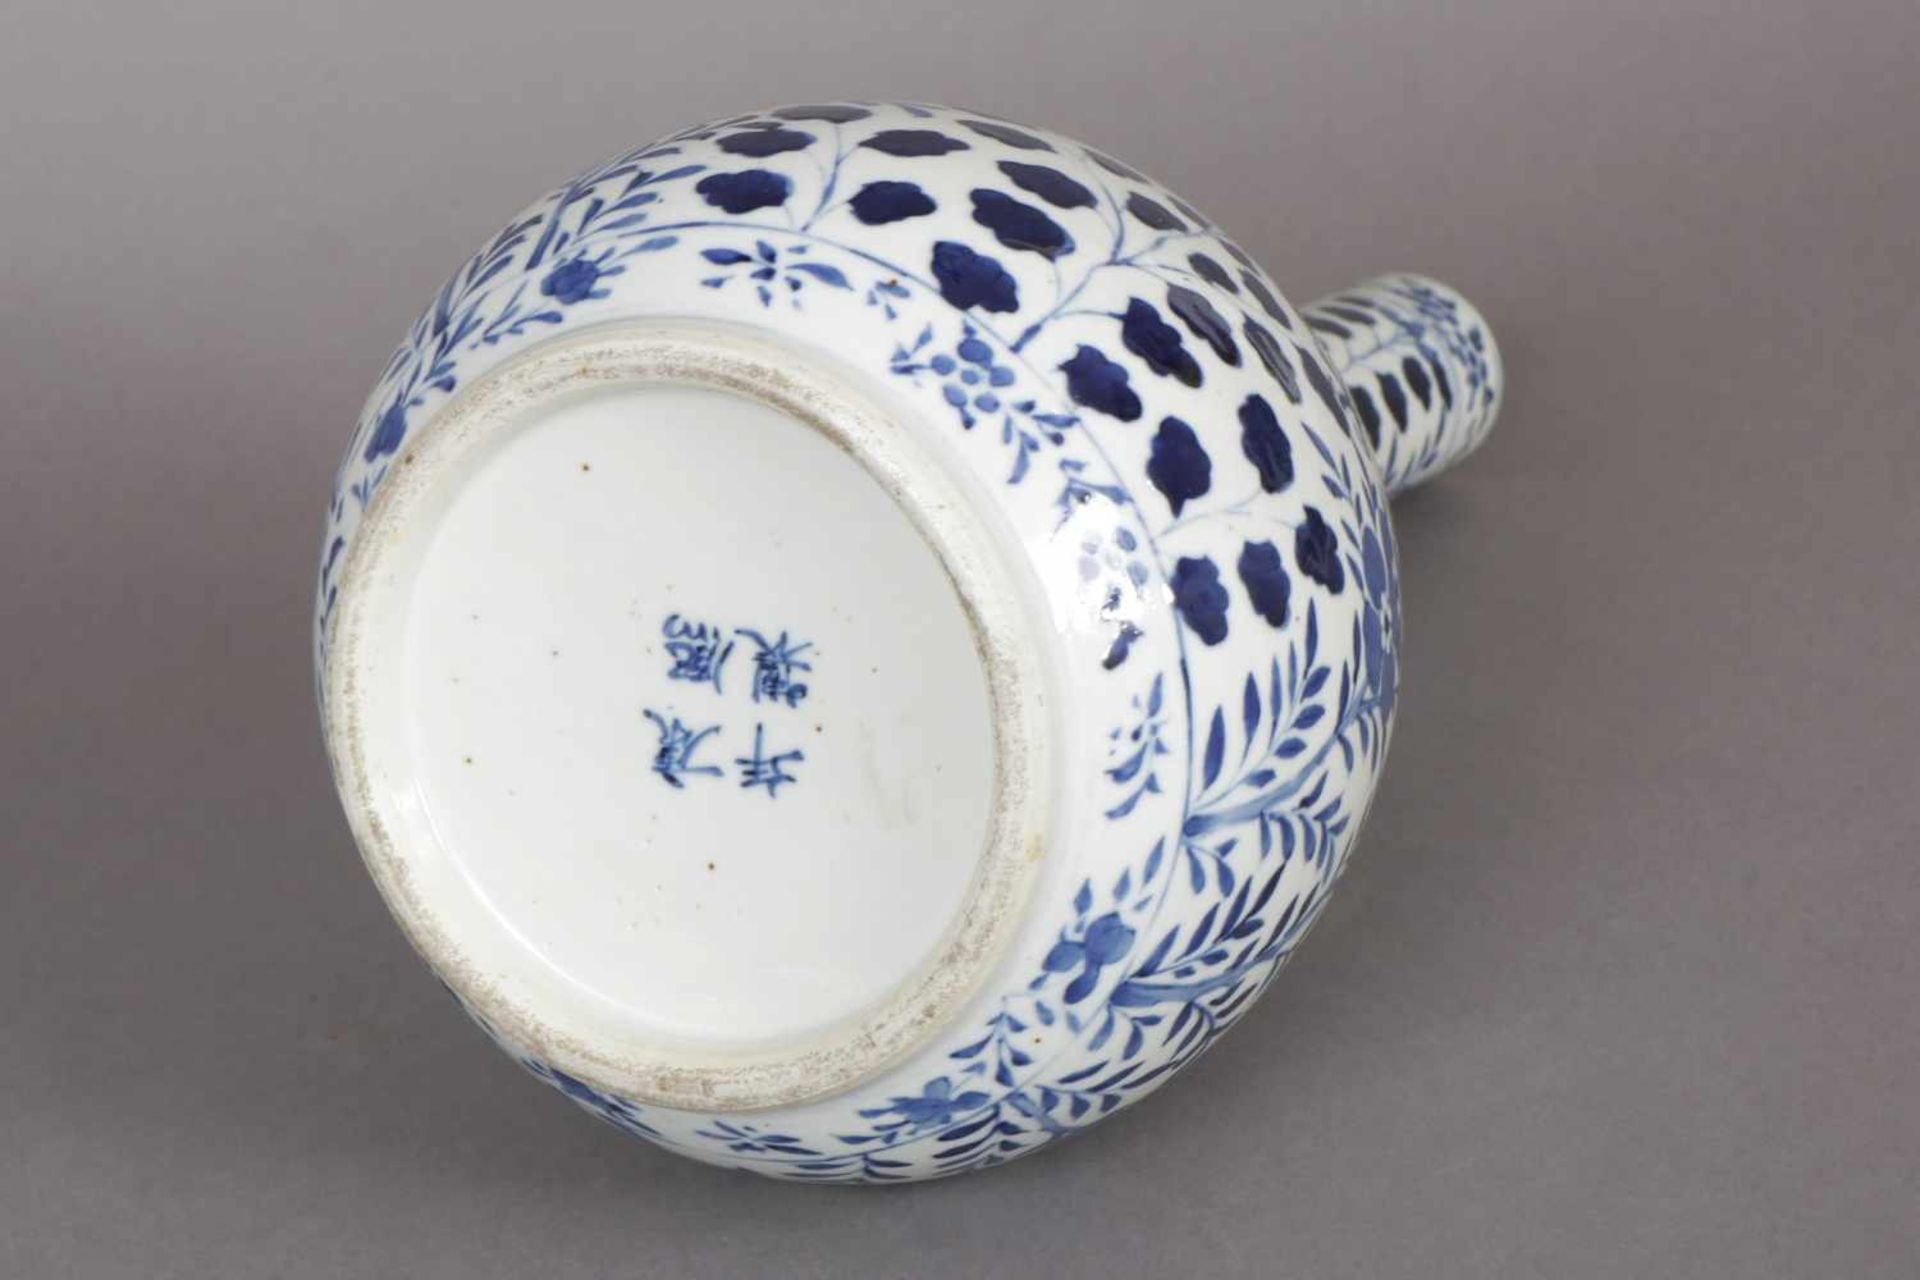 Chinesische Keulenvase im Stile Ming Porzellan, Drachen- und Floraldekor in Blaumalerei, runder - Bild 2 aus 2